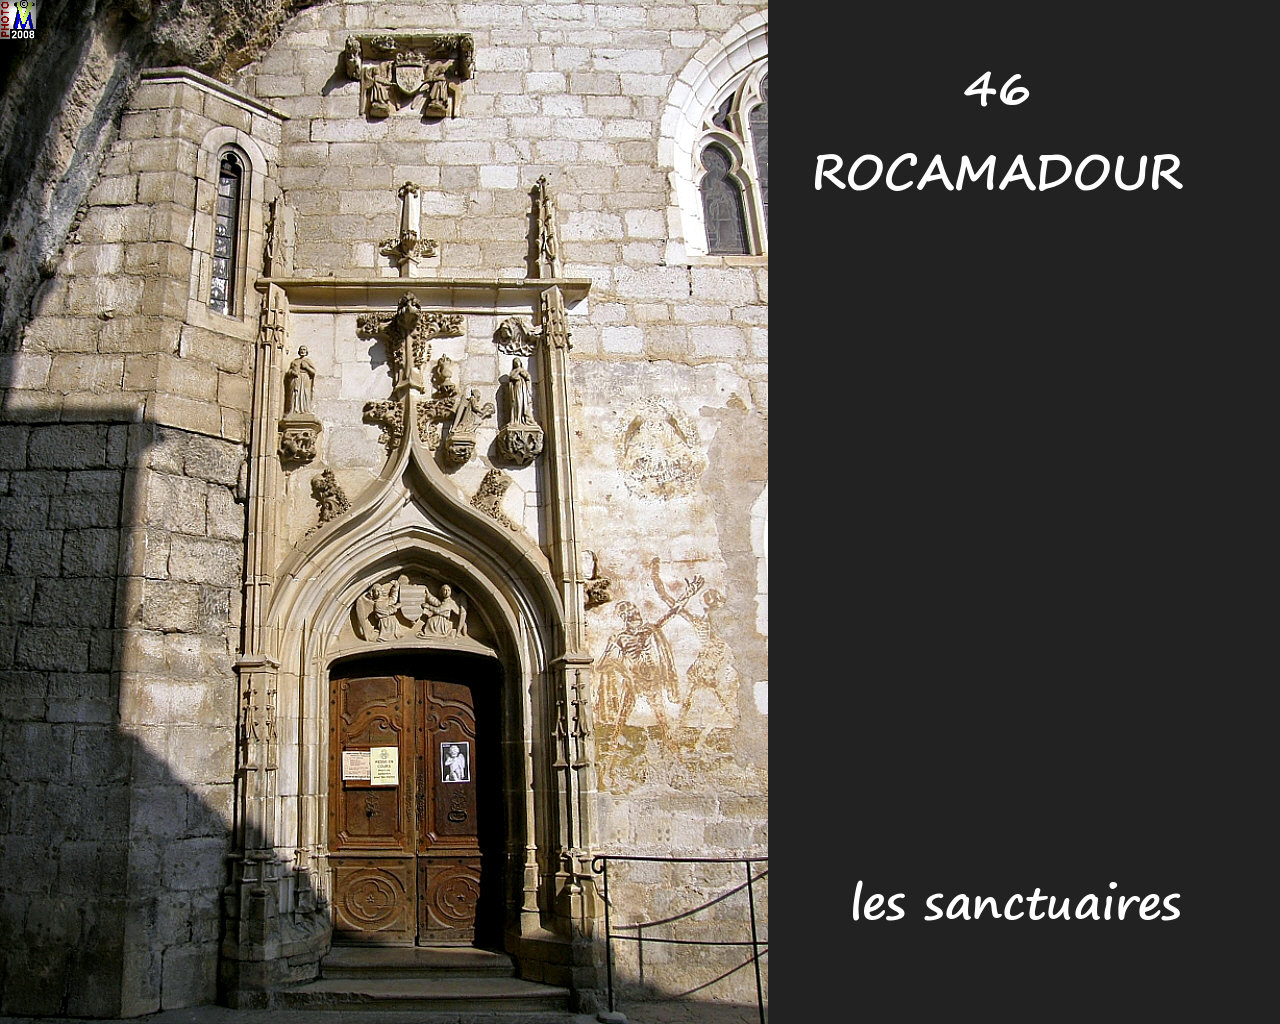 46ROCAMADOUR_sanctuaires_270.jpg